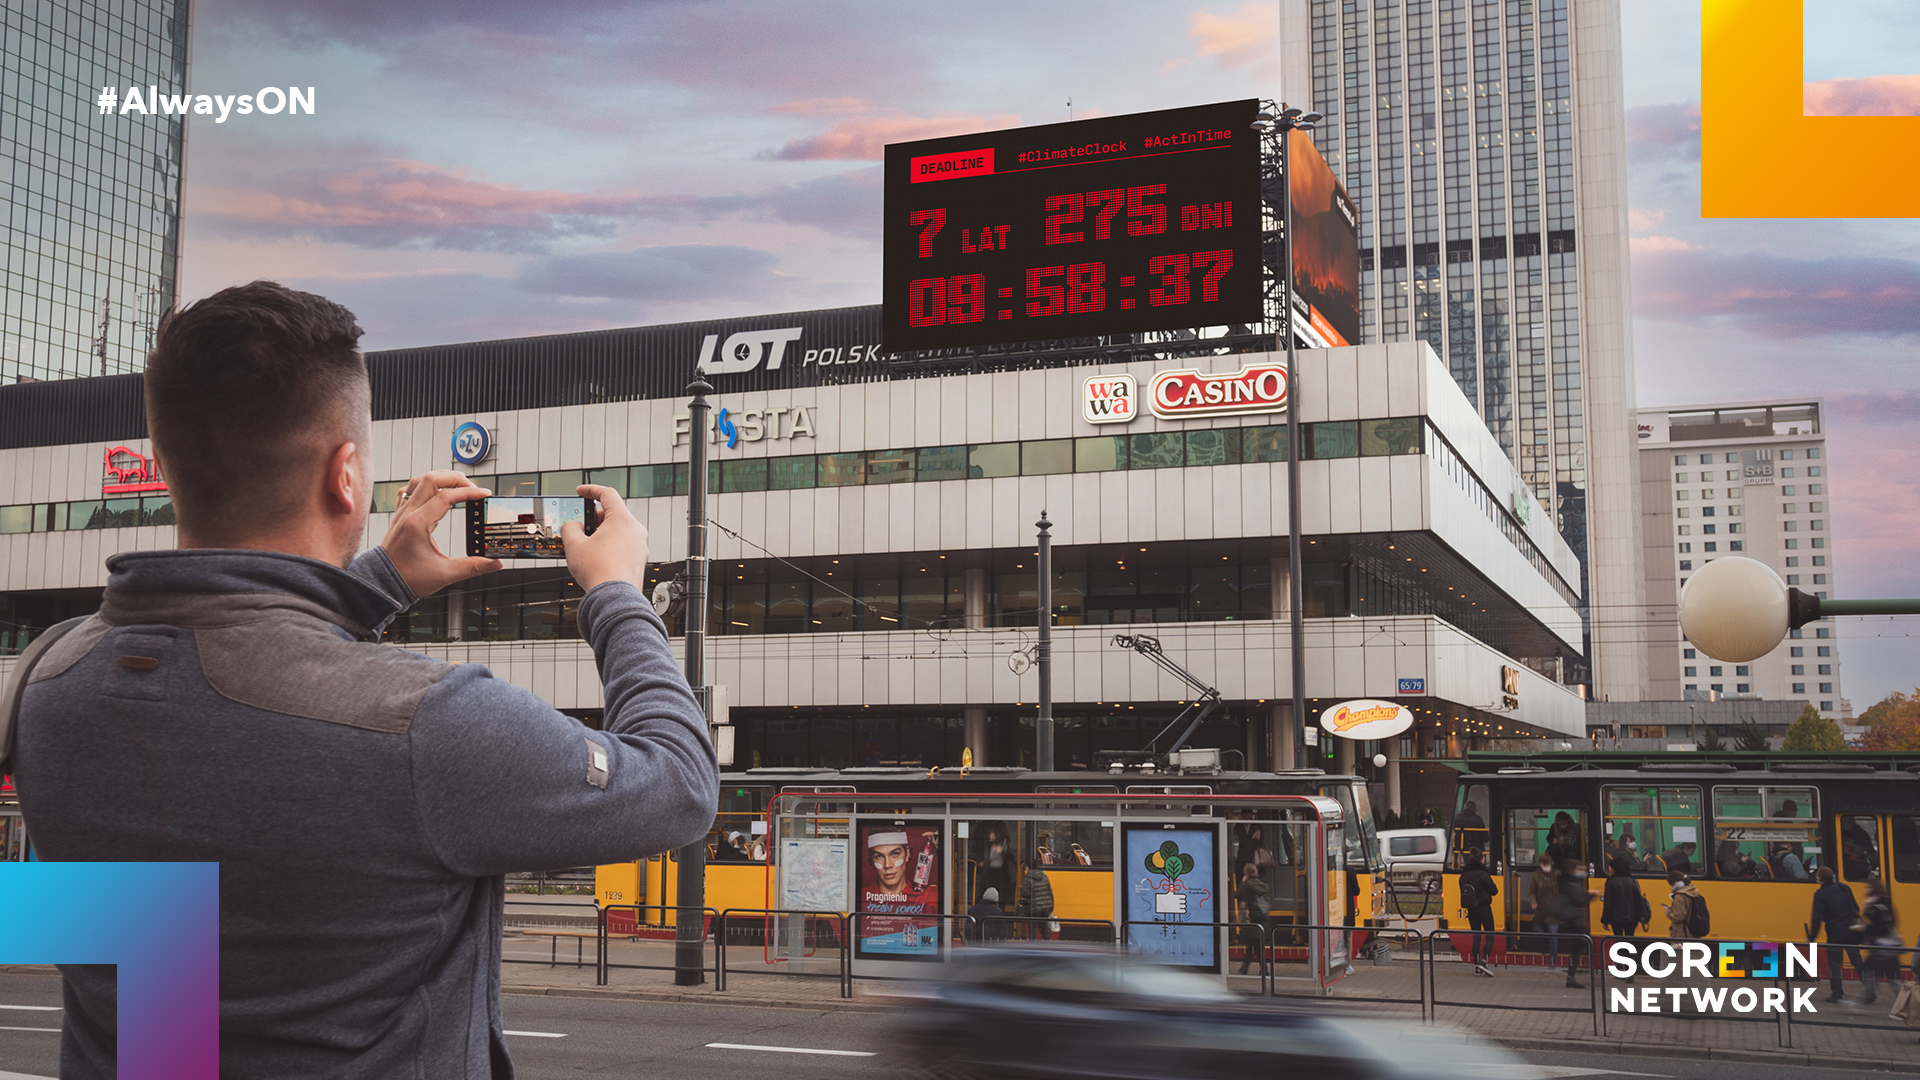 Zegar w centrum Warszawy odlicza czas do katastrofy klimatycznej - Screen Network